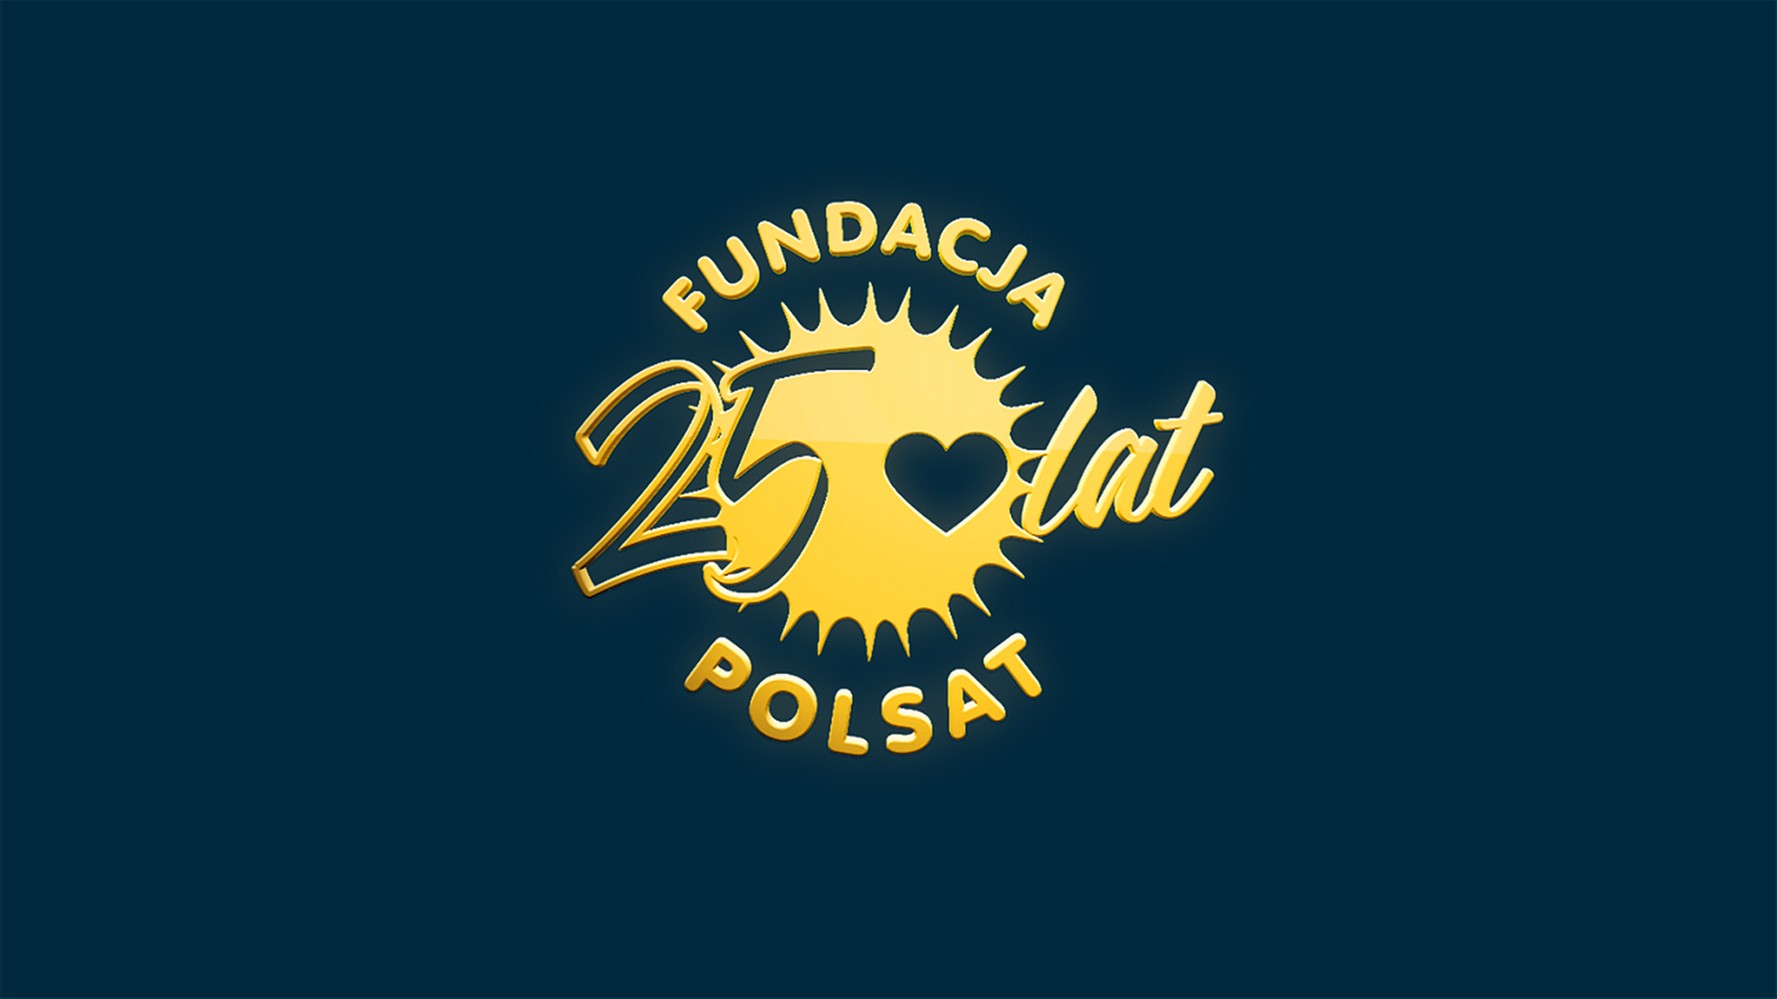 Fundacja Polsat już od 25 lat pomaga dzieciom. Dziękujemy!